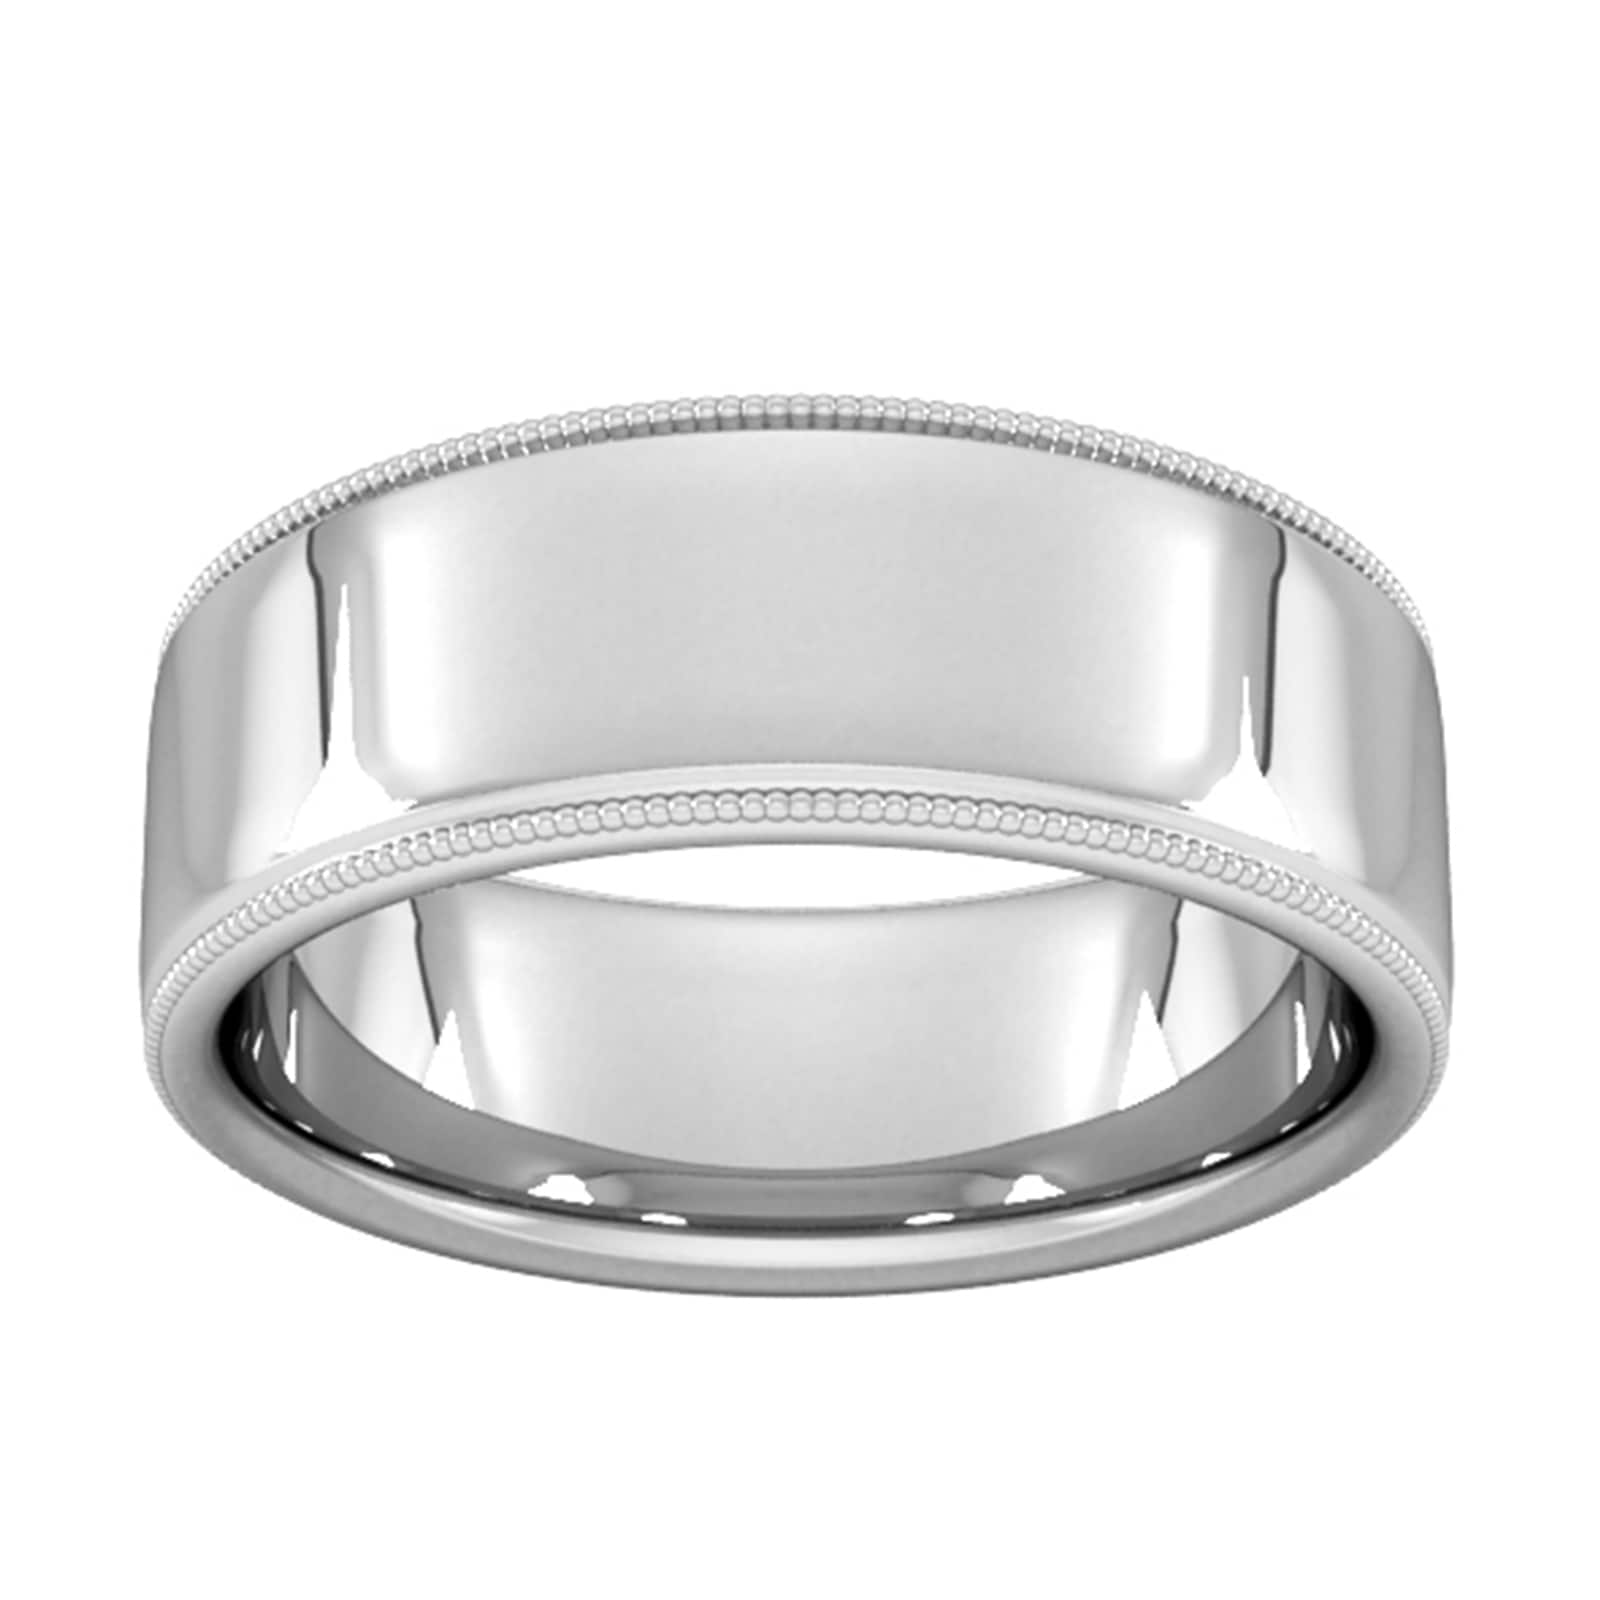 8mm Slight Court Extra Heavy Milgrain Edge Wedding Ring In 9 Carat White Gold - Ring Size S